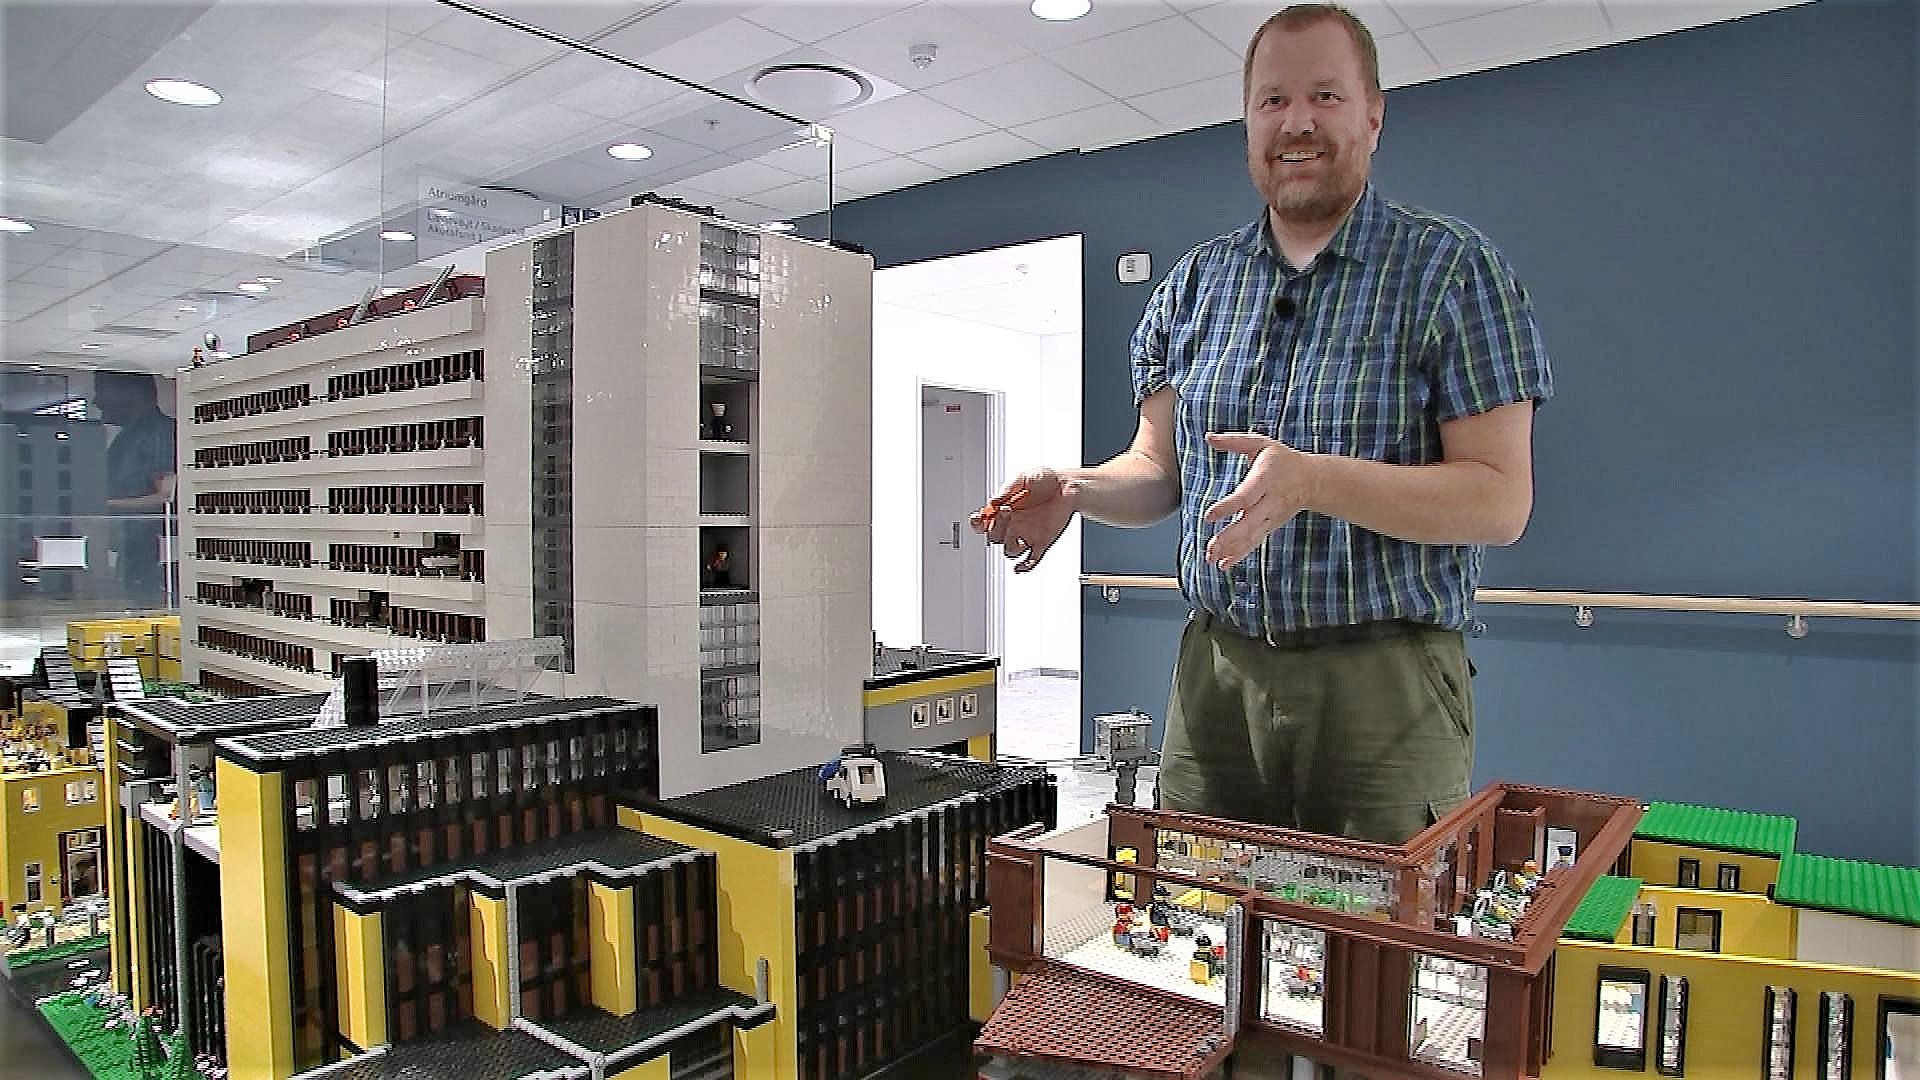 Anders har bygget hospital i Lego – har brugt hundredtusindvis af klodser | TV